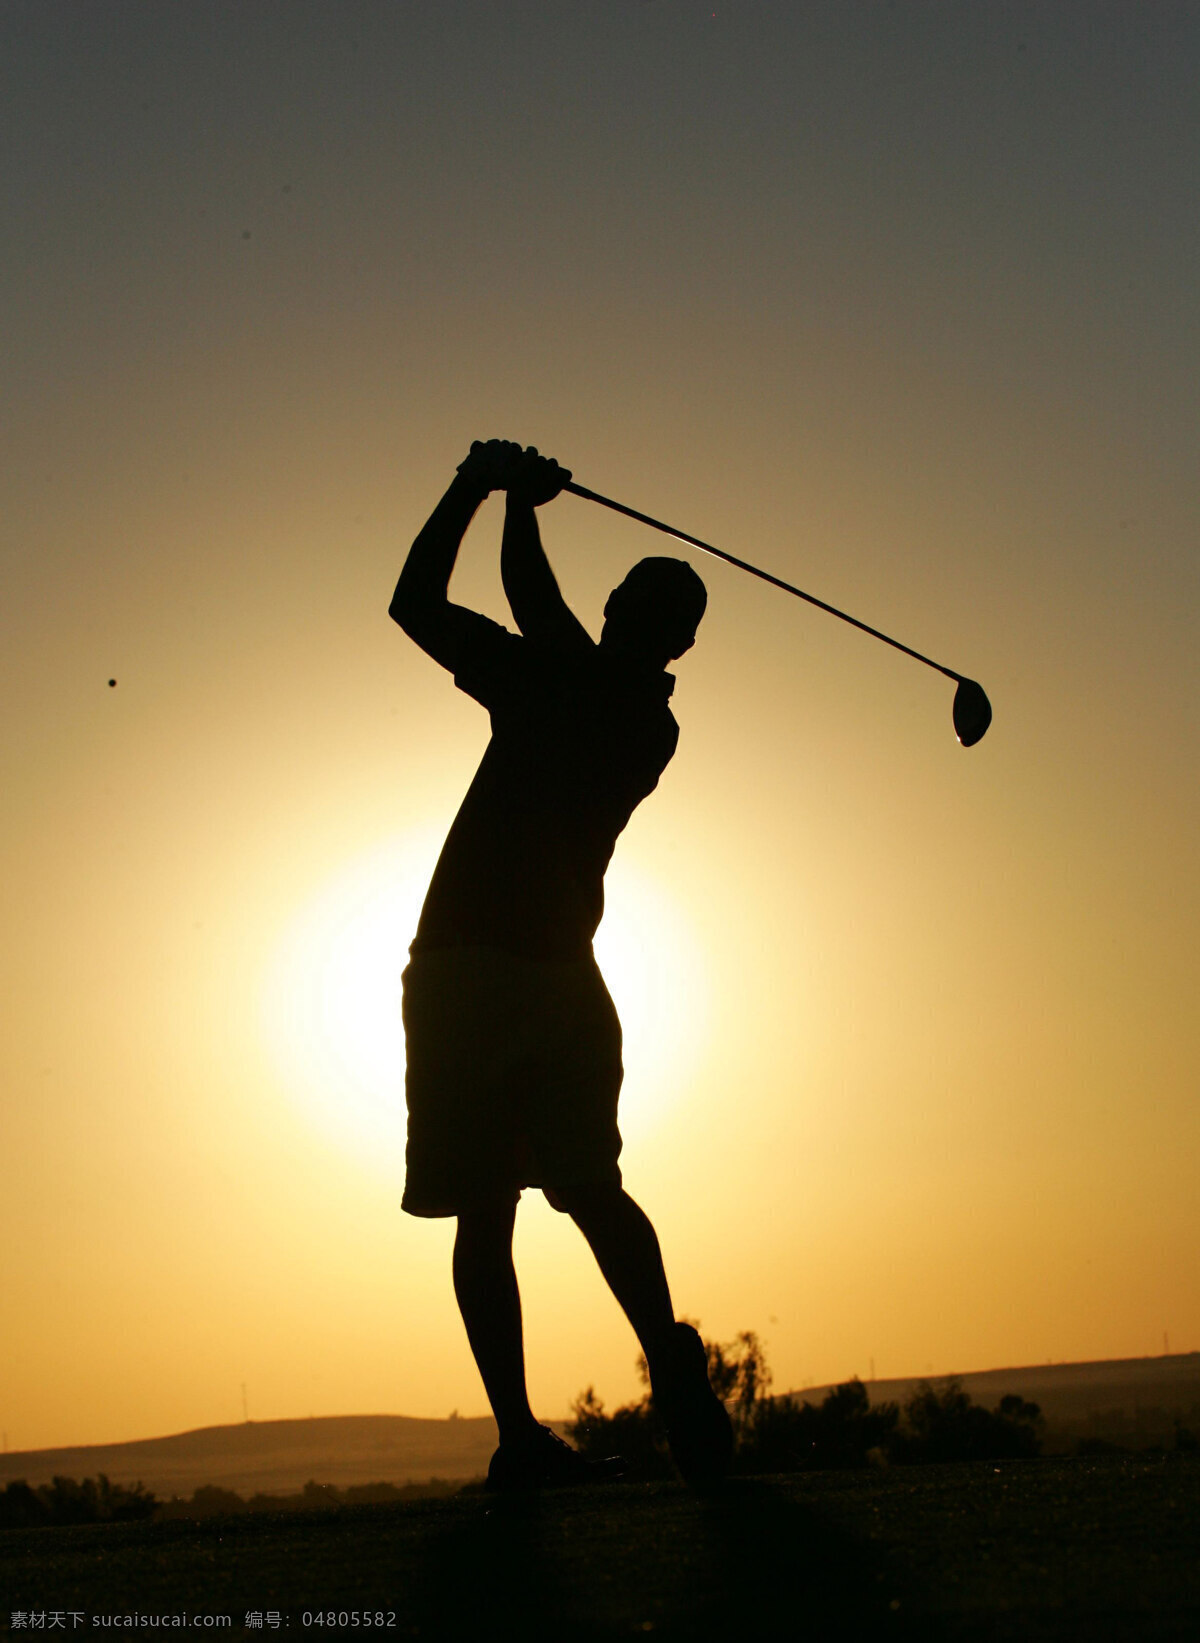 打高尔夫 打高尔夫球 背影 清晨 远方 剪影 活动 休闲生活 男性男人 人物图库